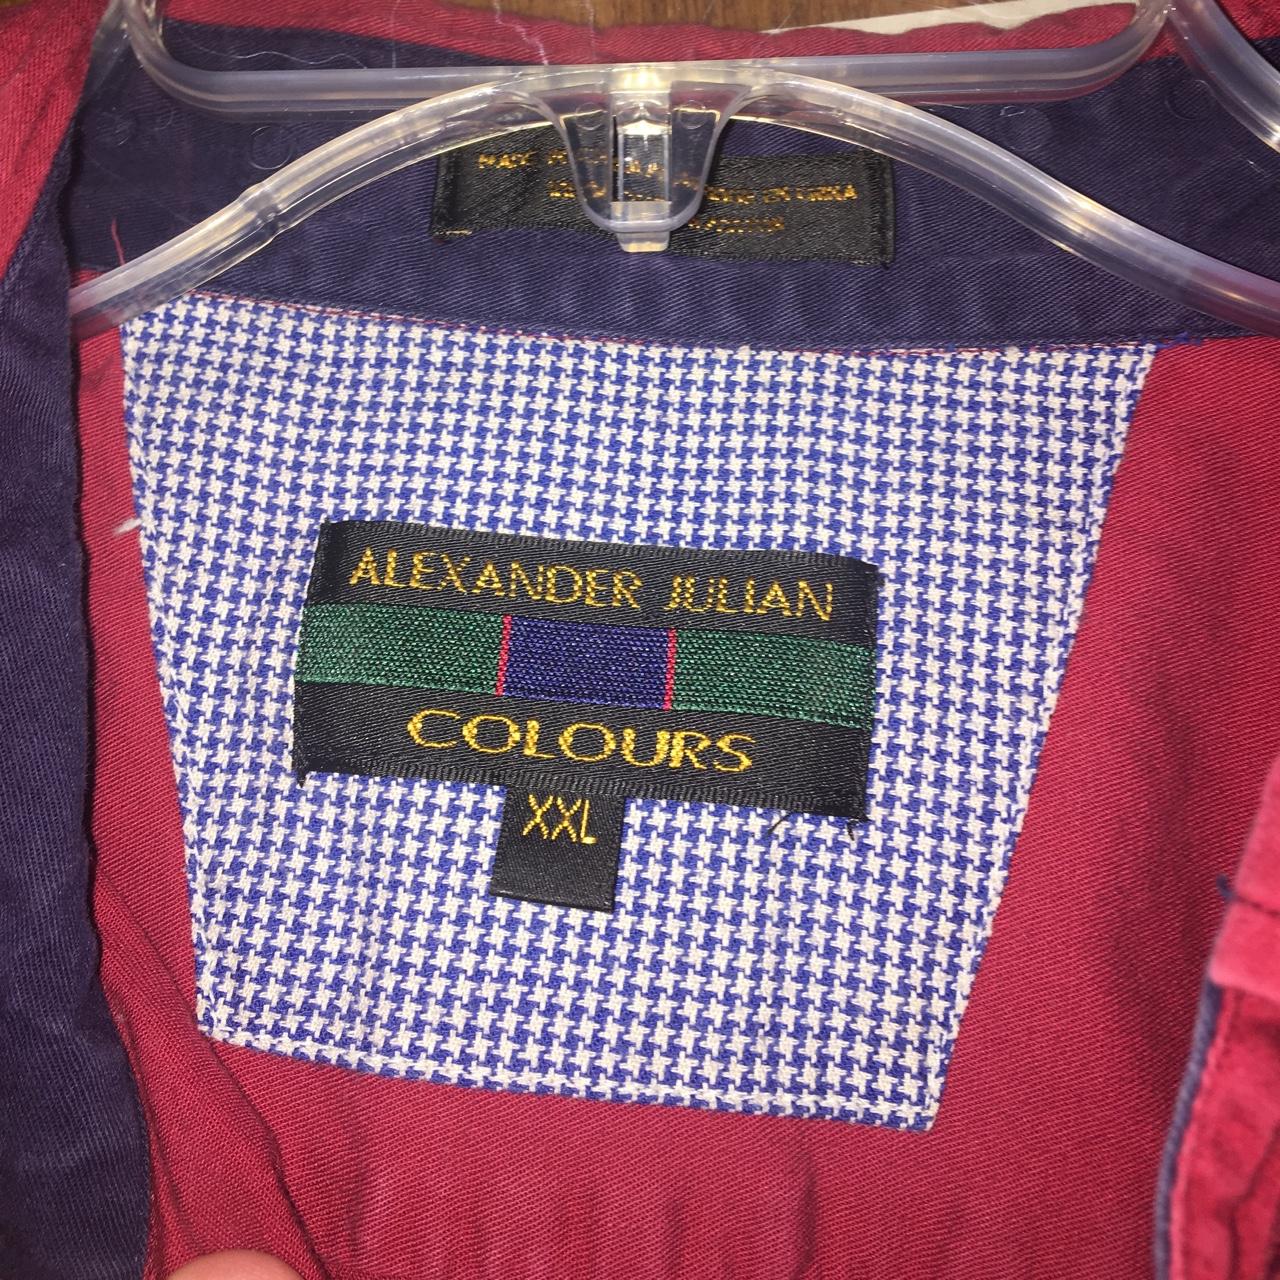 Alexander Julian colours Button Up Shirt Size 2xl.... - Depop